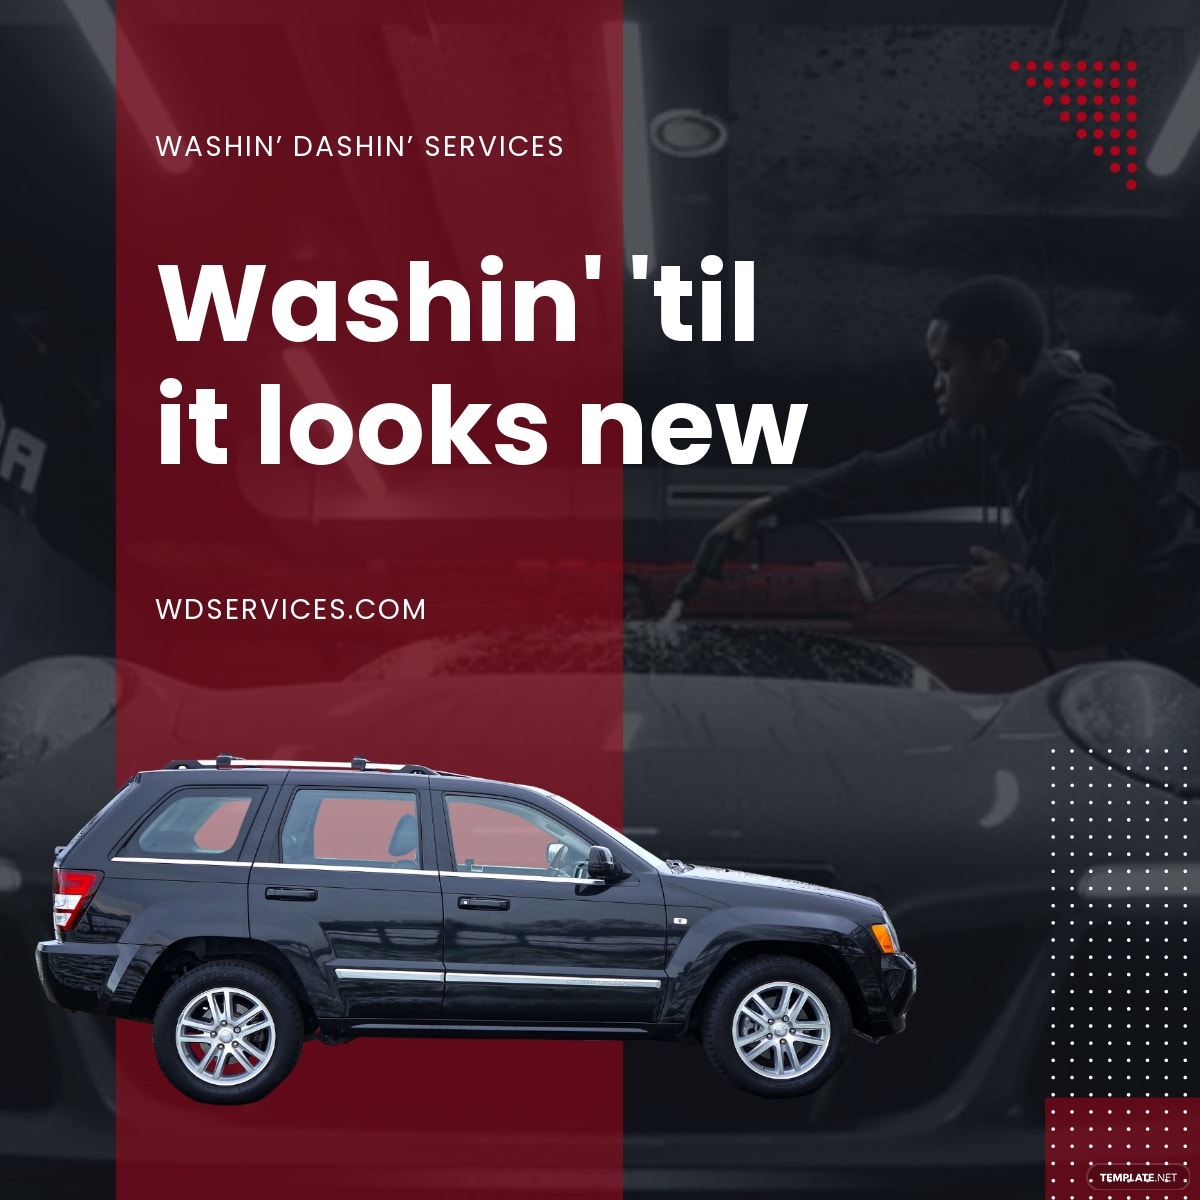 car wash service linkedin post template